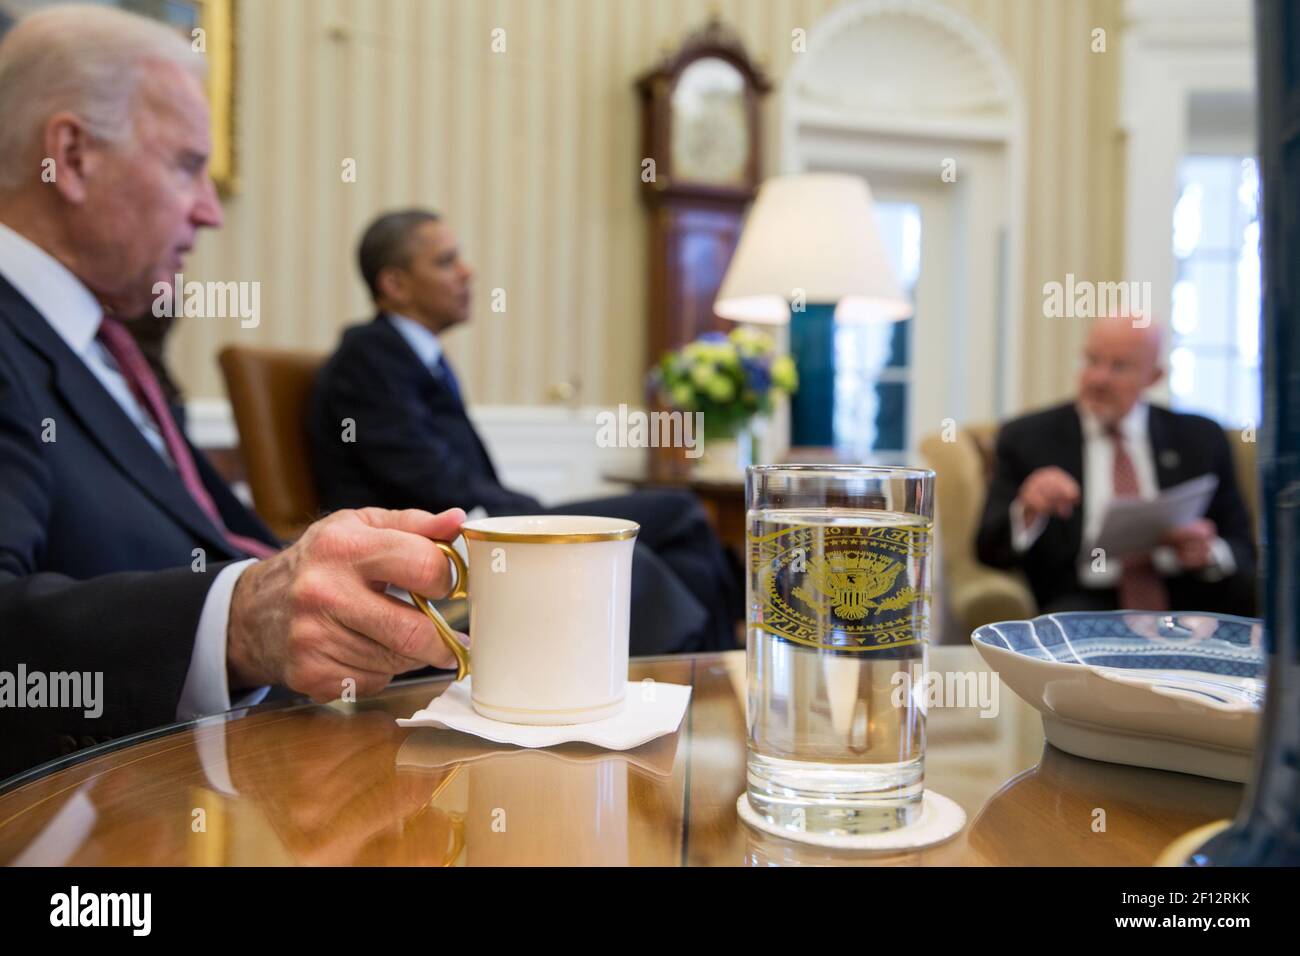 Le président Barack Obama et le vice-président Joe Biden rencontrent James Clapper, directeur du renseignement national, lors de la réunion d'information présidentielle dans le Bureau ovale le 2 avril 2013. Banque D'Images